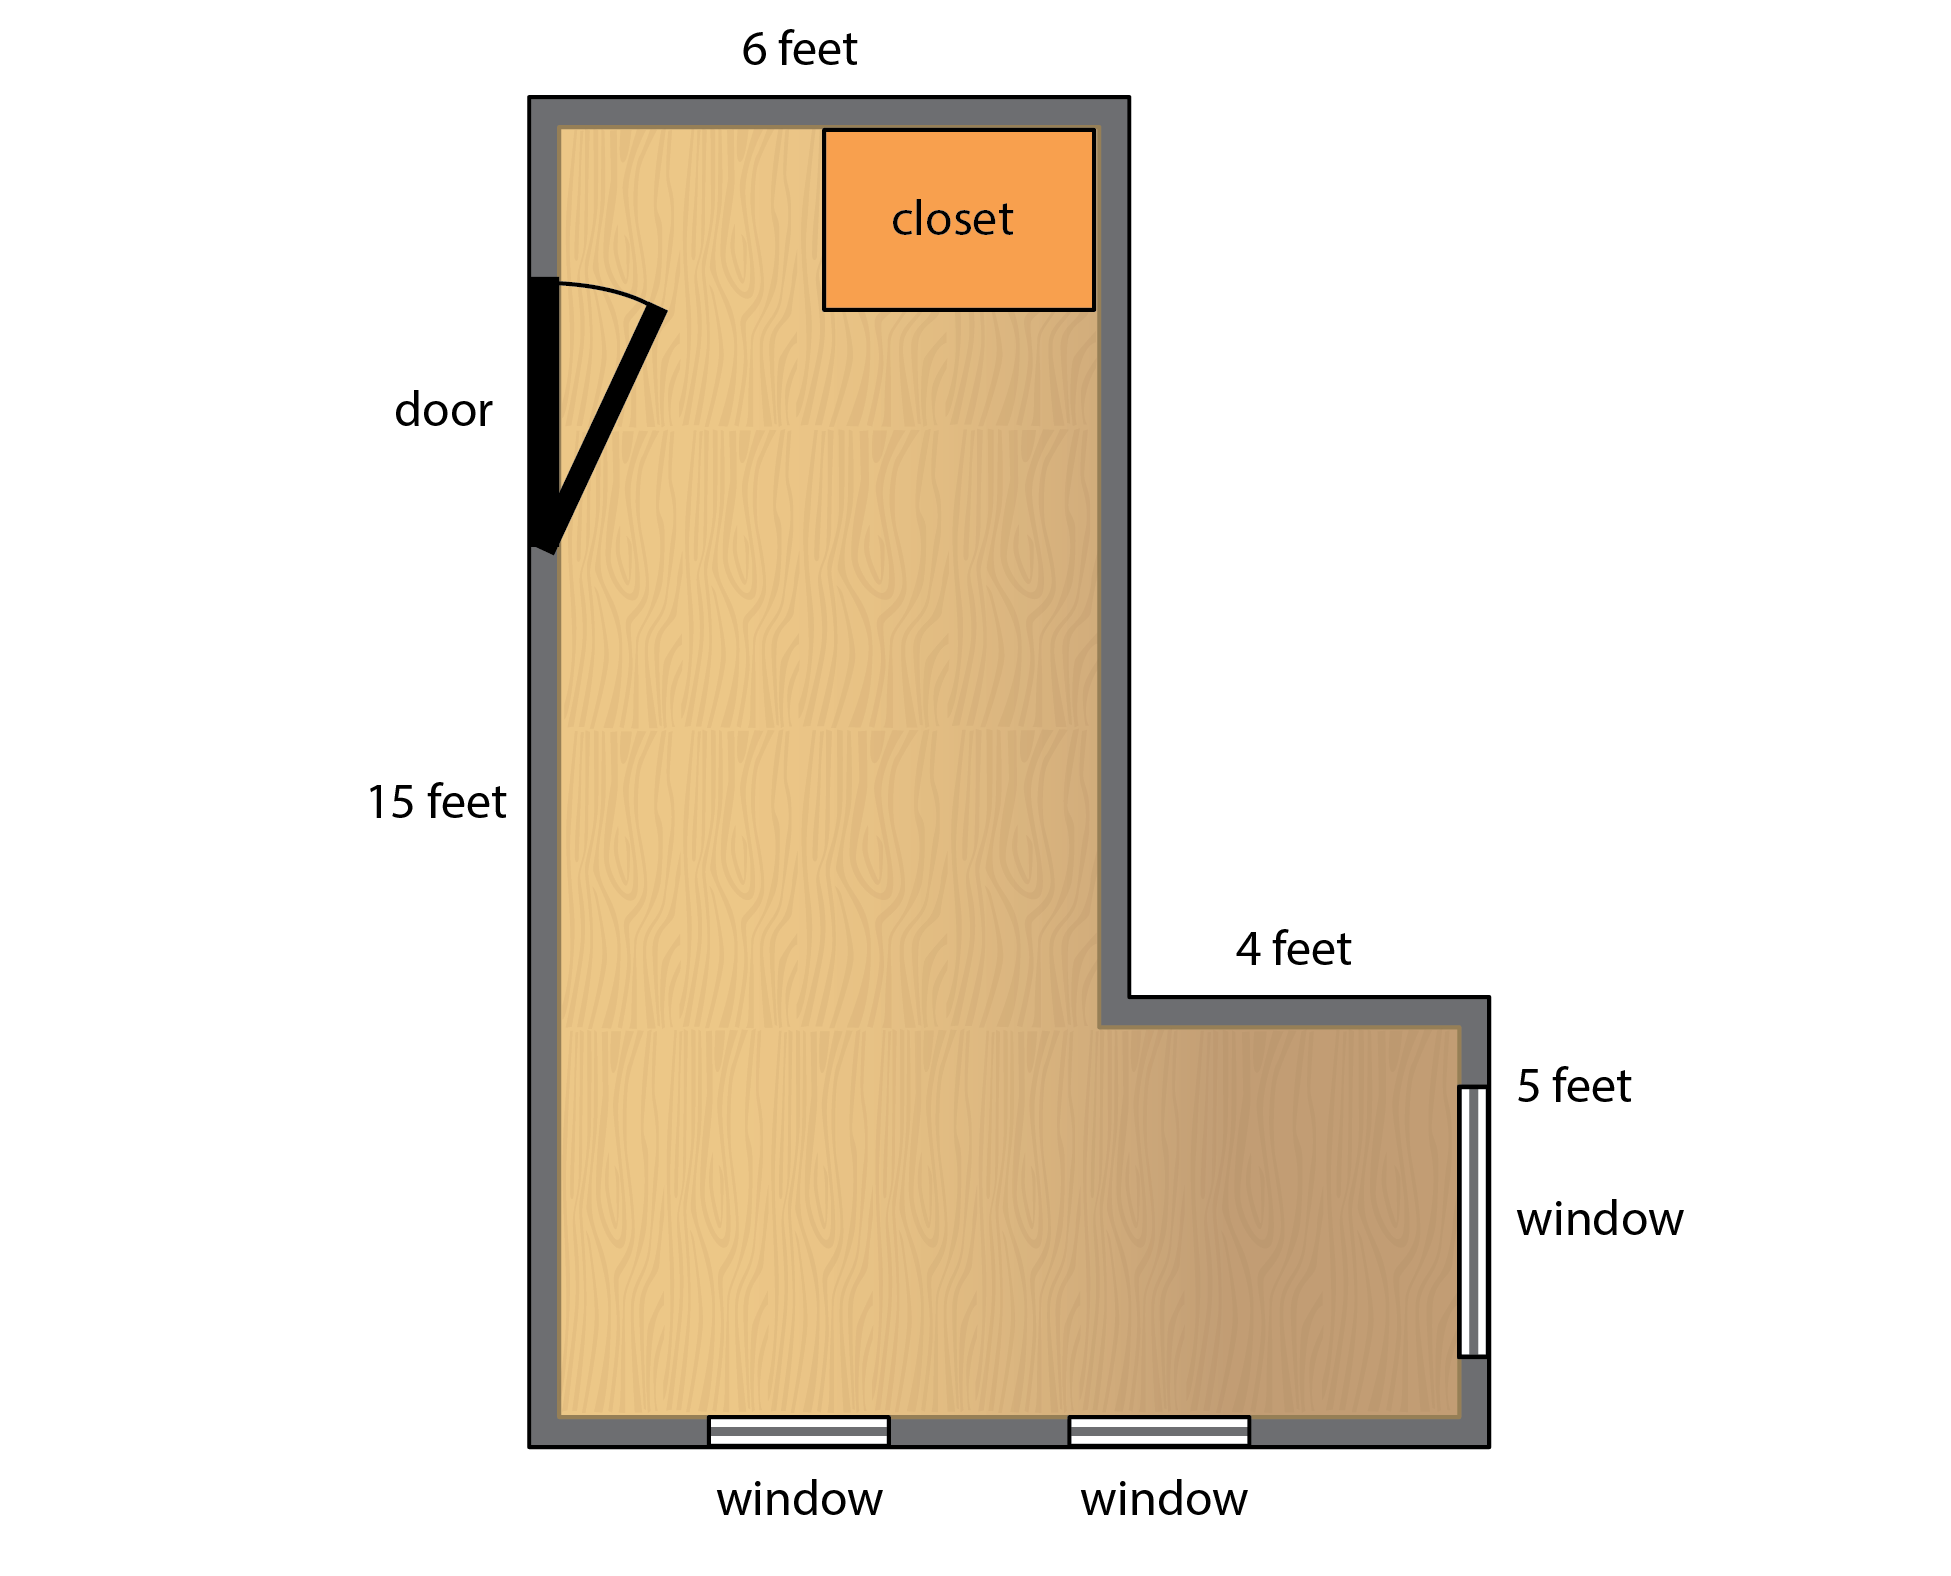 floorplan of a 6-sided room